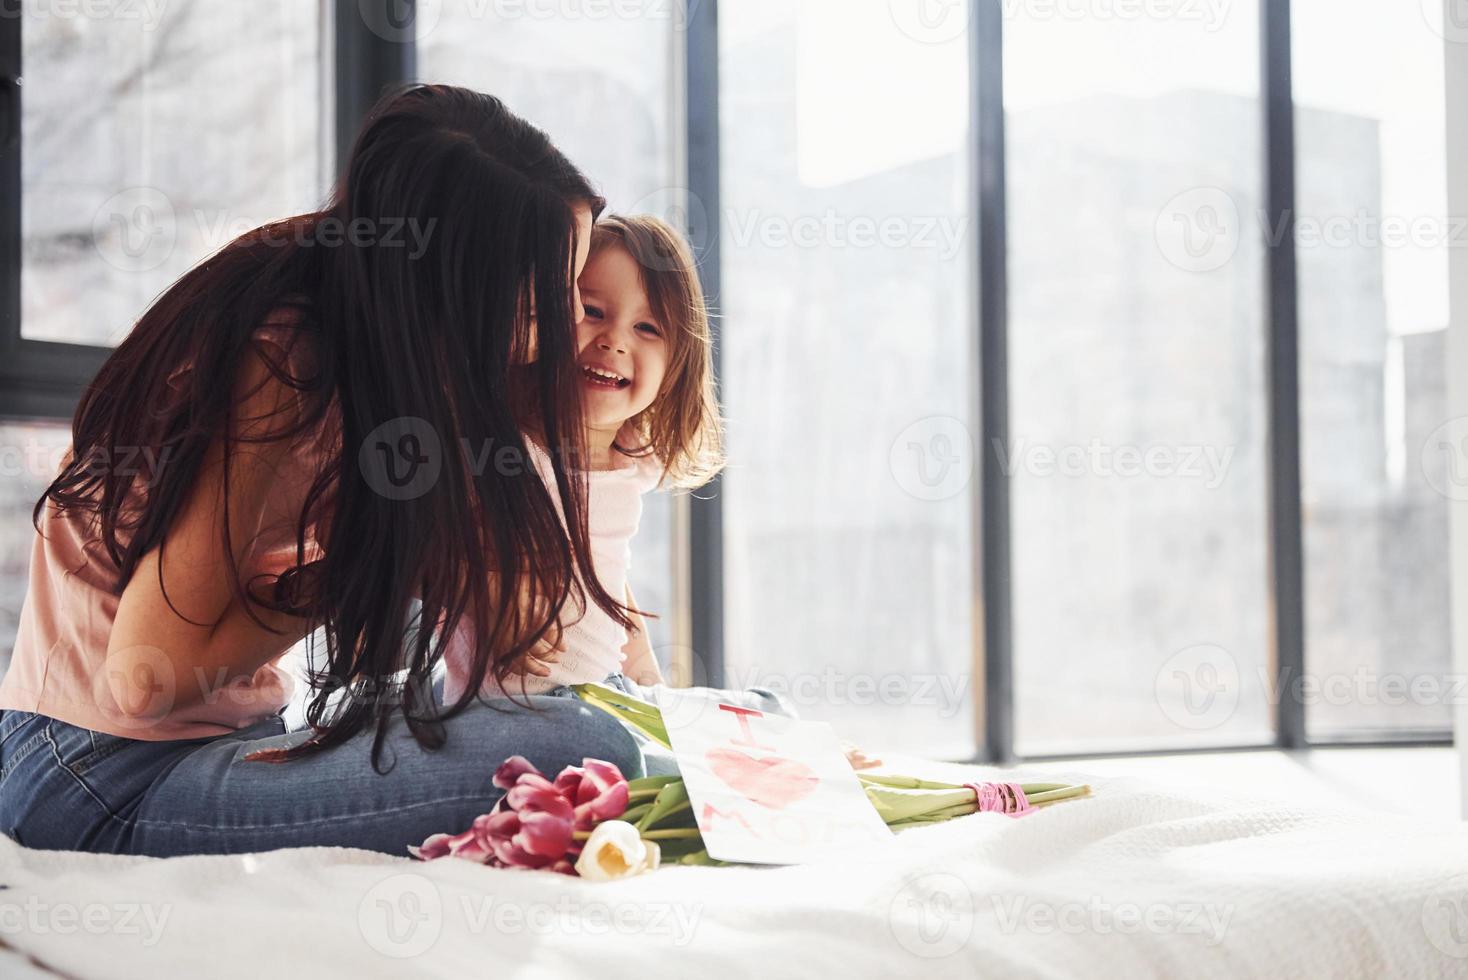 s'embrassant. la fille félicite la mère avec les vacances et donne un bouquet de fleurs photo